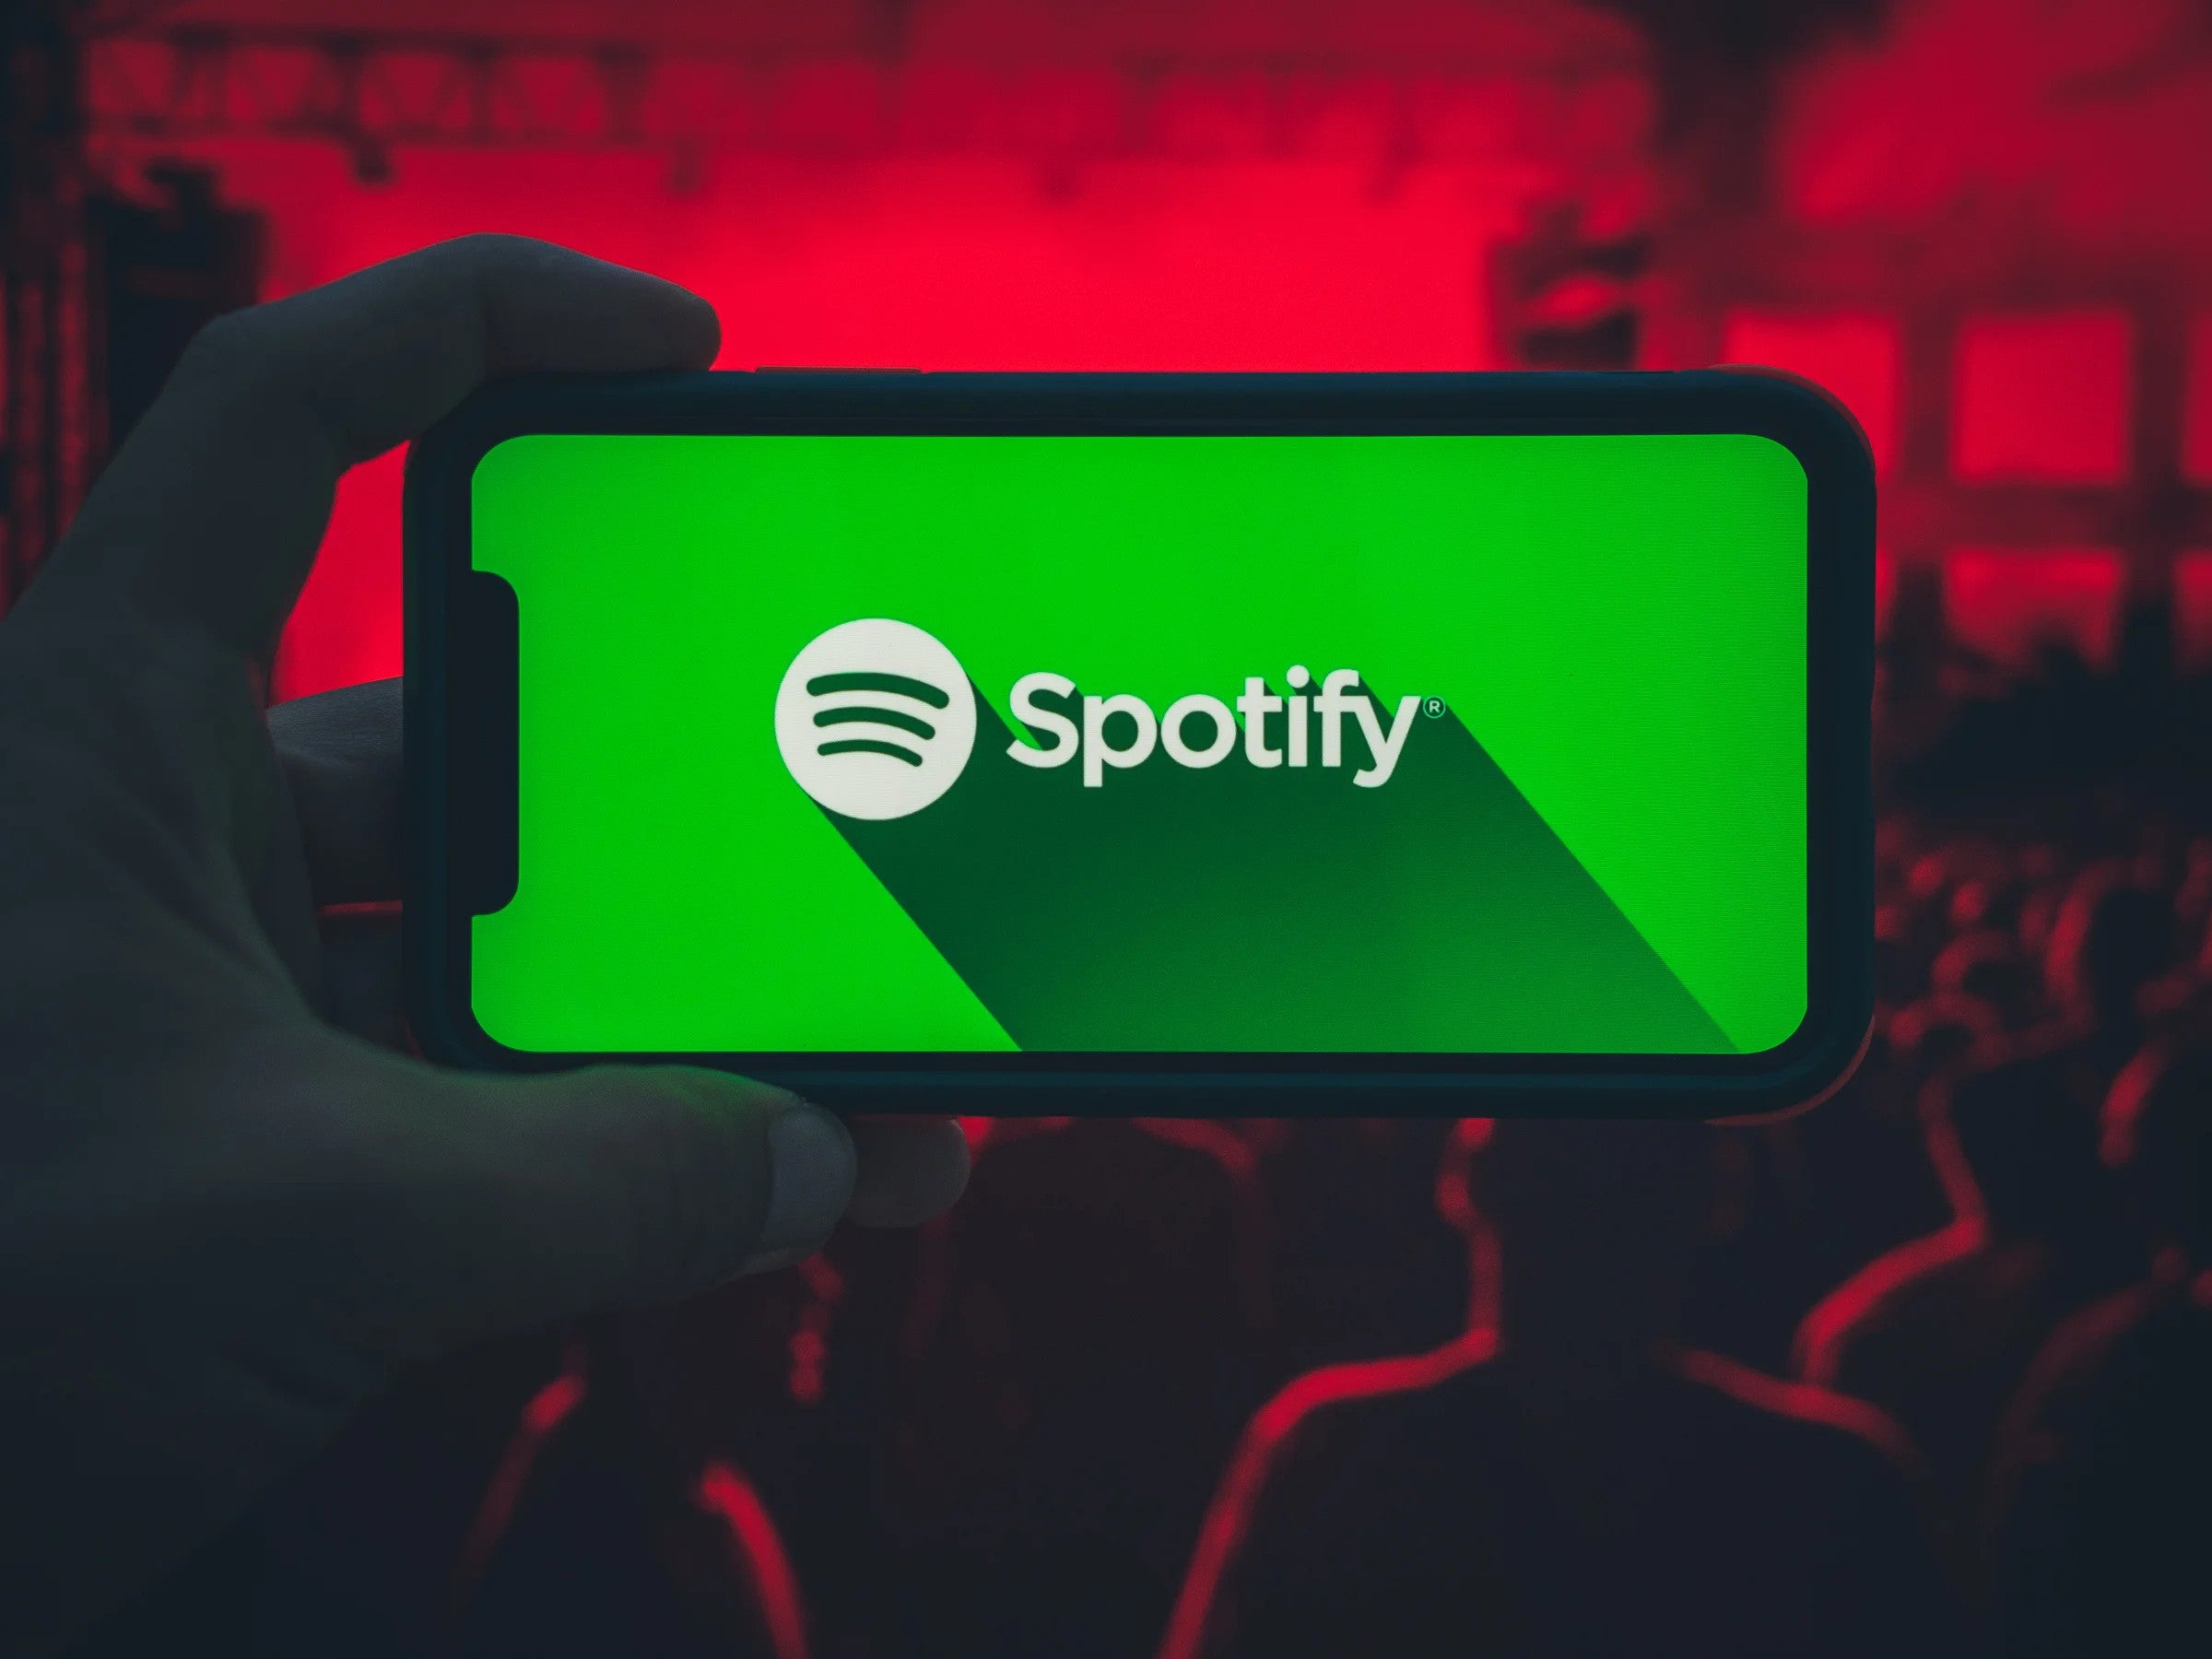 #Spotify am Abgrund: Wie lang geht das noch gut?